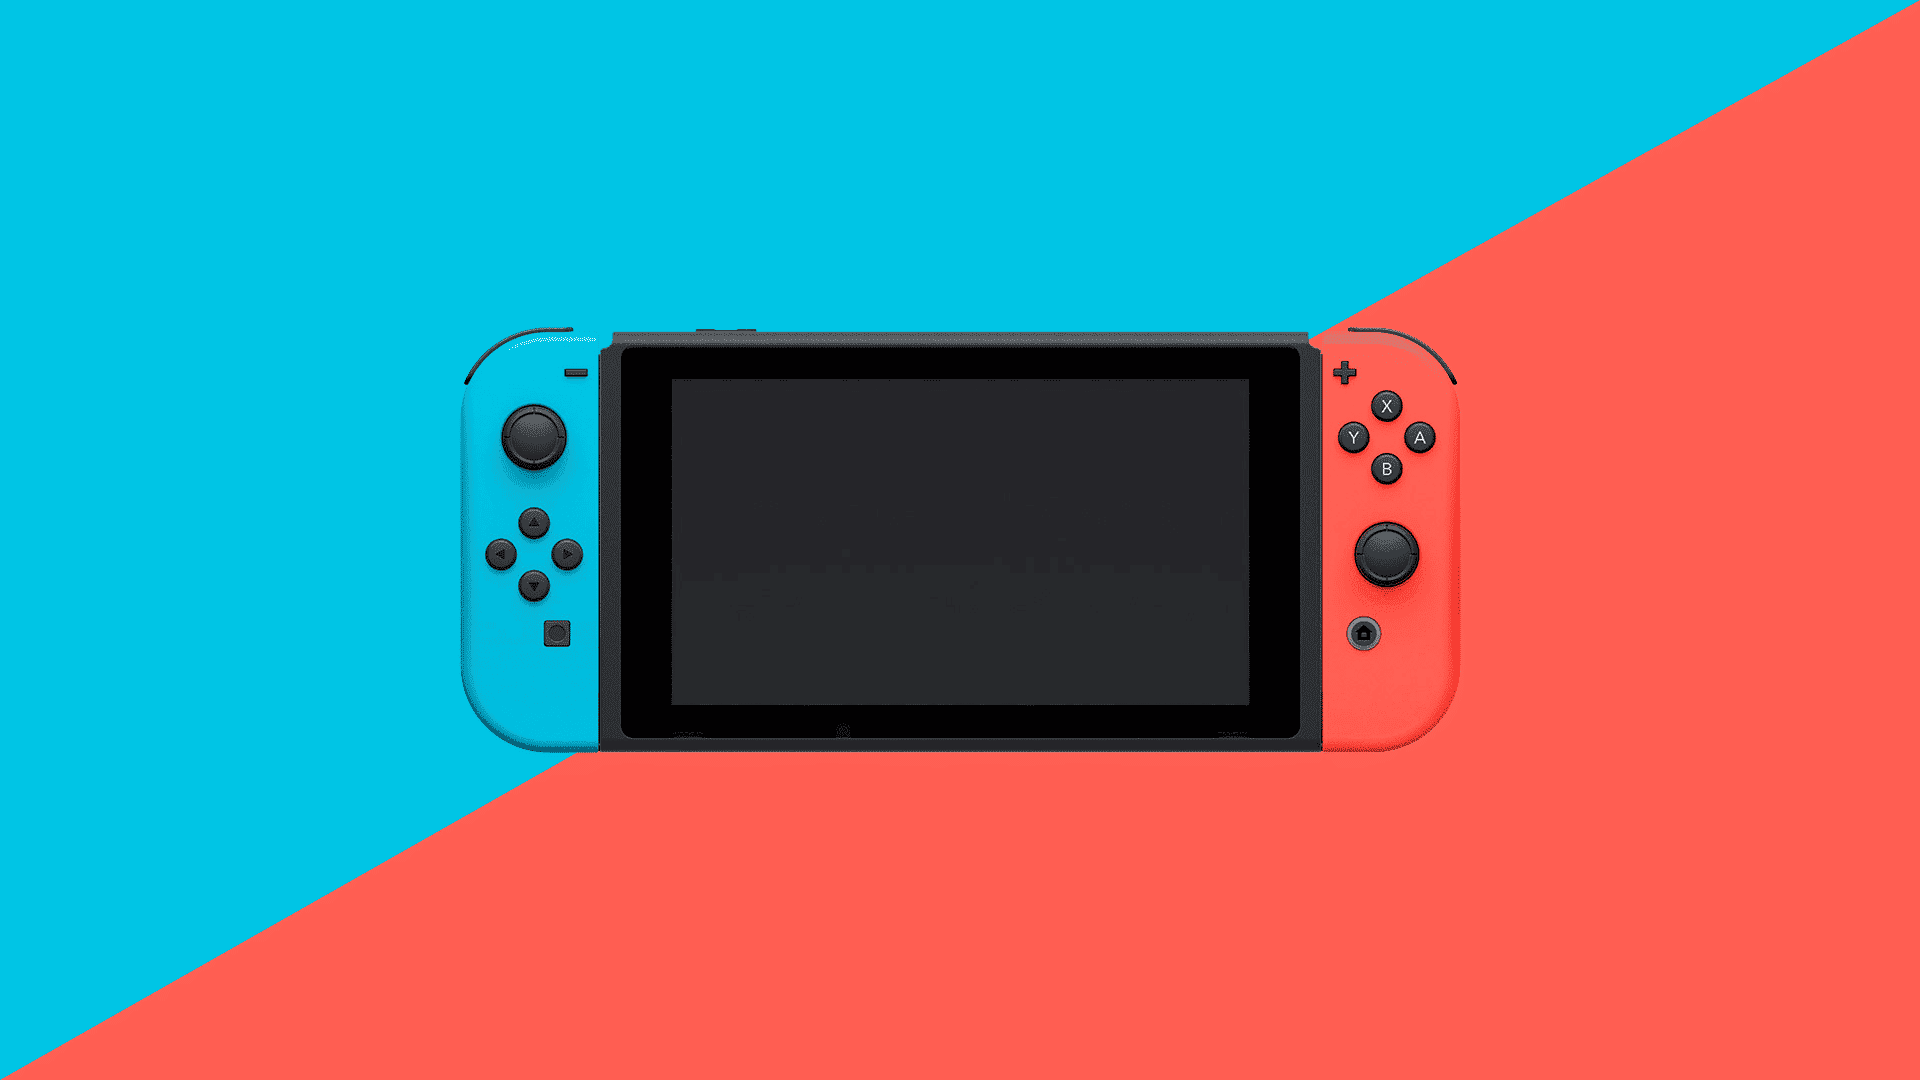 El catálogo de videojuegos occidental de Nintendo Switch ya supera los 1.100 títulos